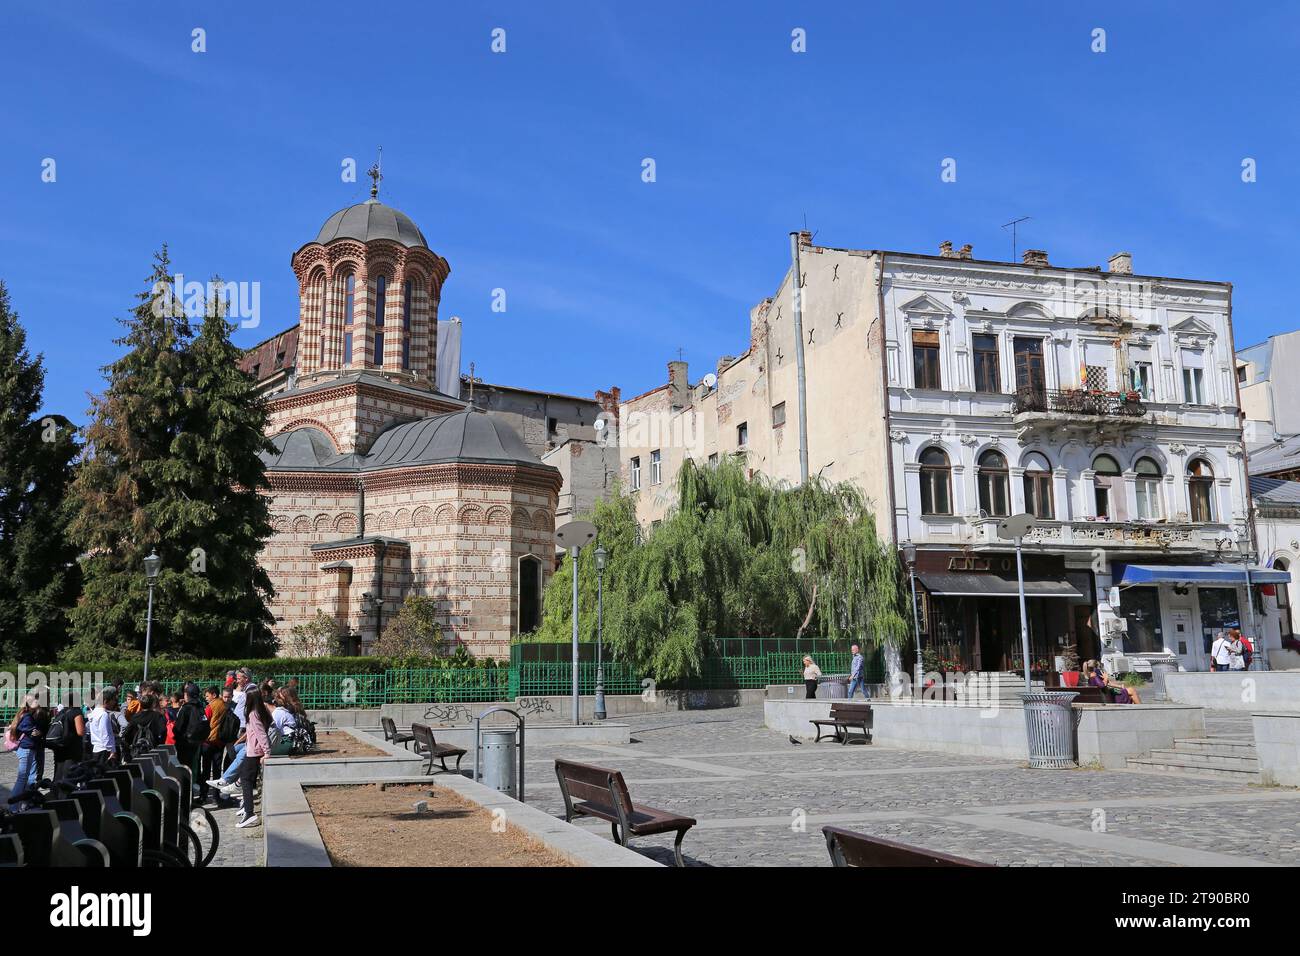 Église orthodoxe de la vieille cour et place Saint Antoine (Piața Sfântul Anton), Strada Șepcari, vieille ville, centre historique, Bucarest, Roumanie, Europe Banque D'Images